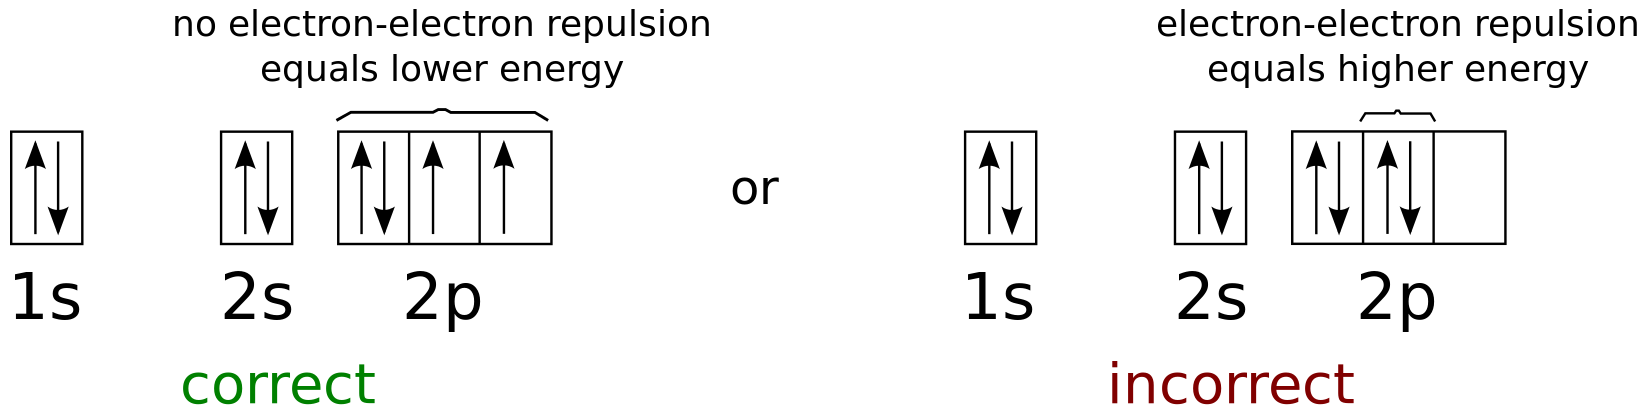 orbital diagram for arsenic